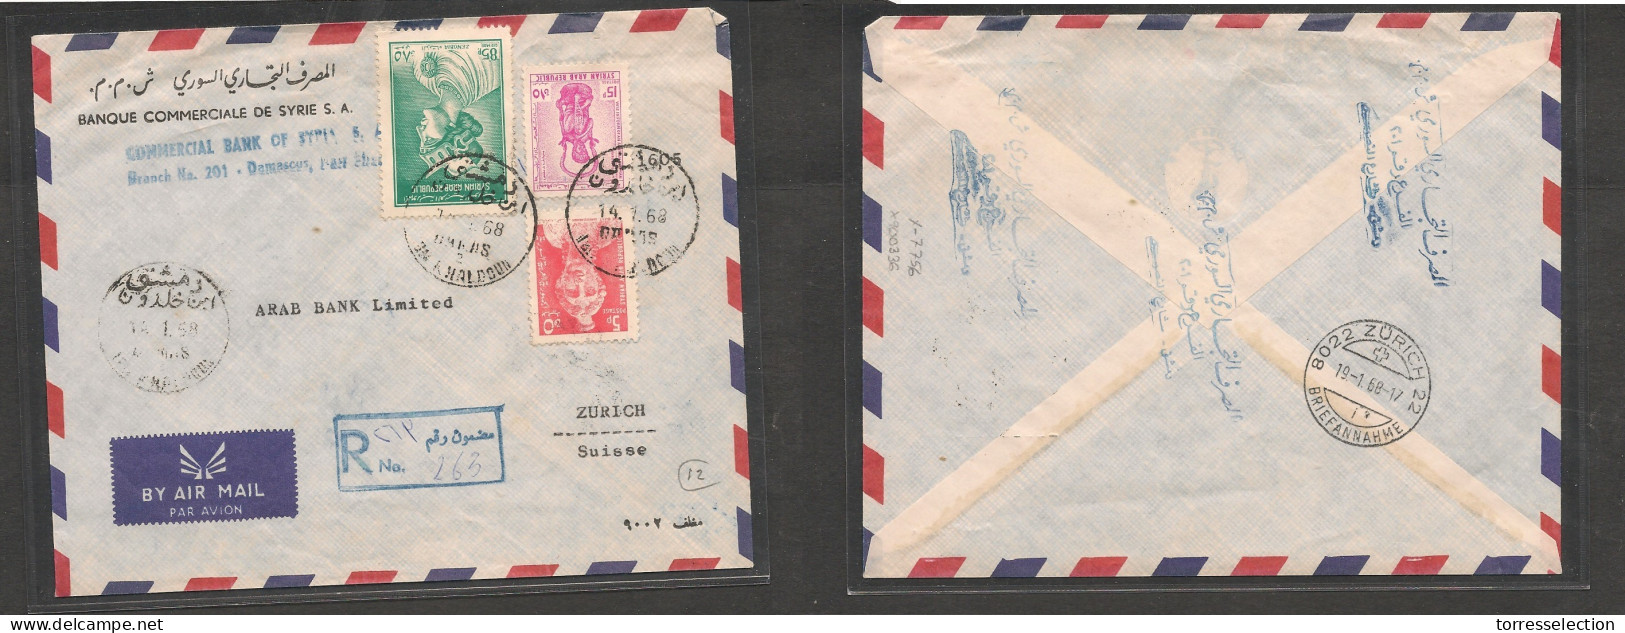 SYRIA. Syria Cover - 1968 Damascus To Switz Zurich Registr Air Mult Fkd Env Nah Khaldoun, Vf XSALE. - Siria